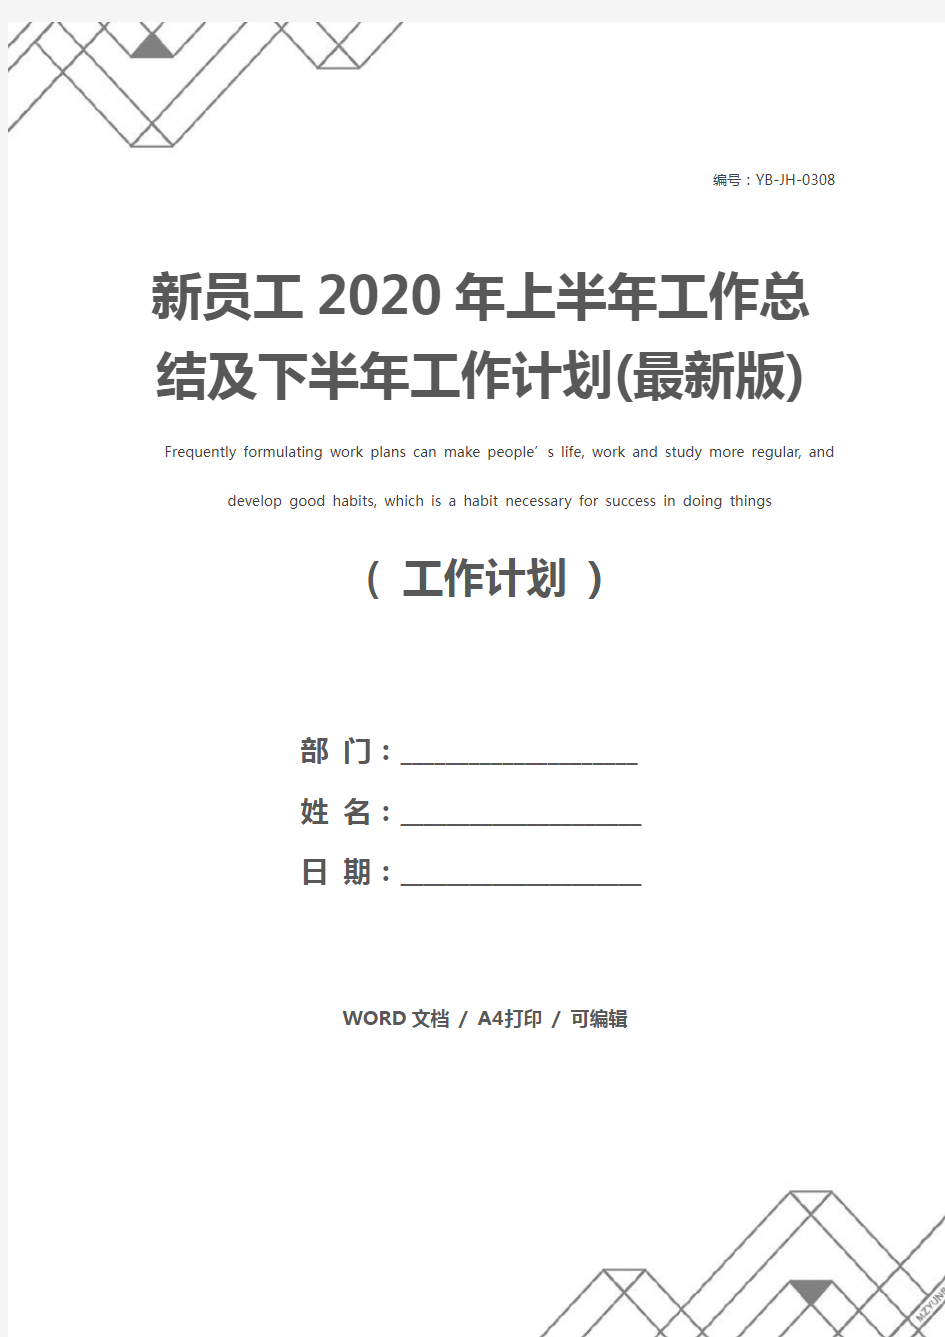 新员工2020年上半年工作总结及下半年工作计划(最新版)